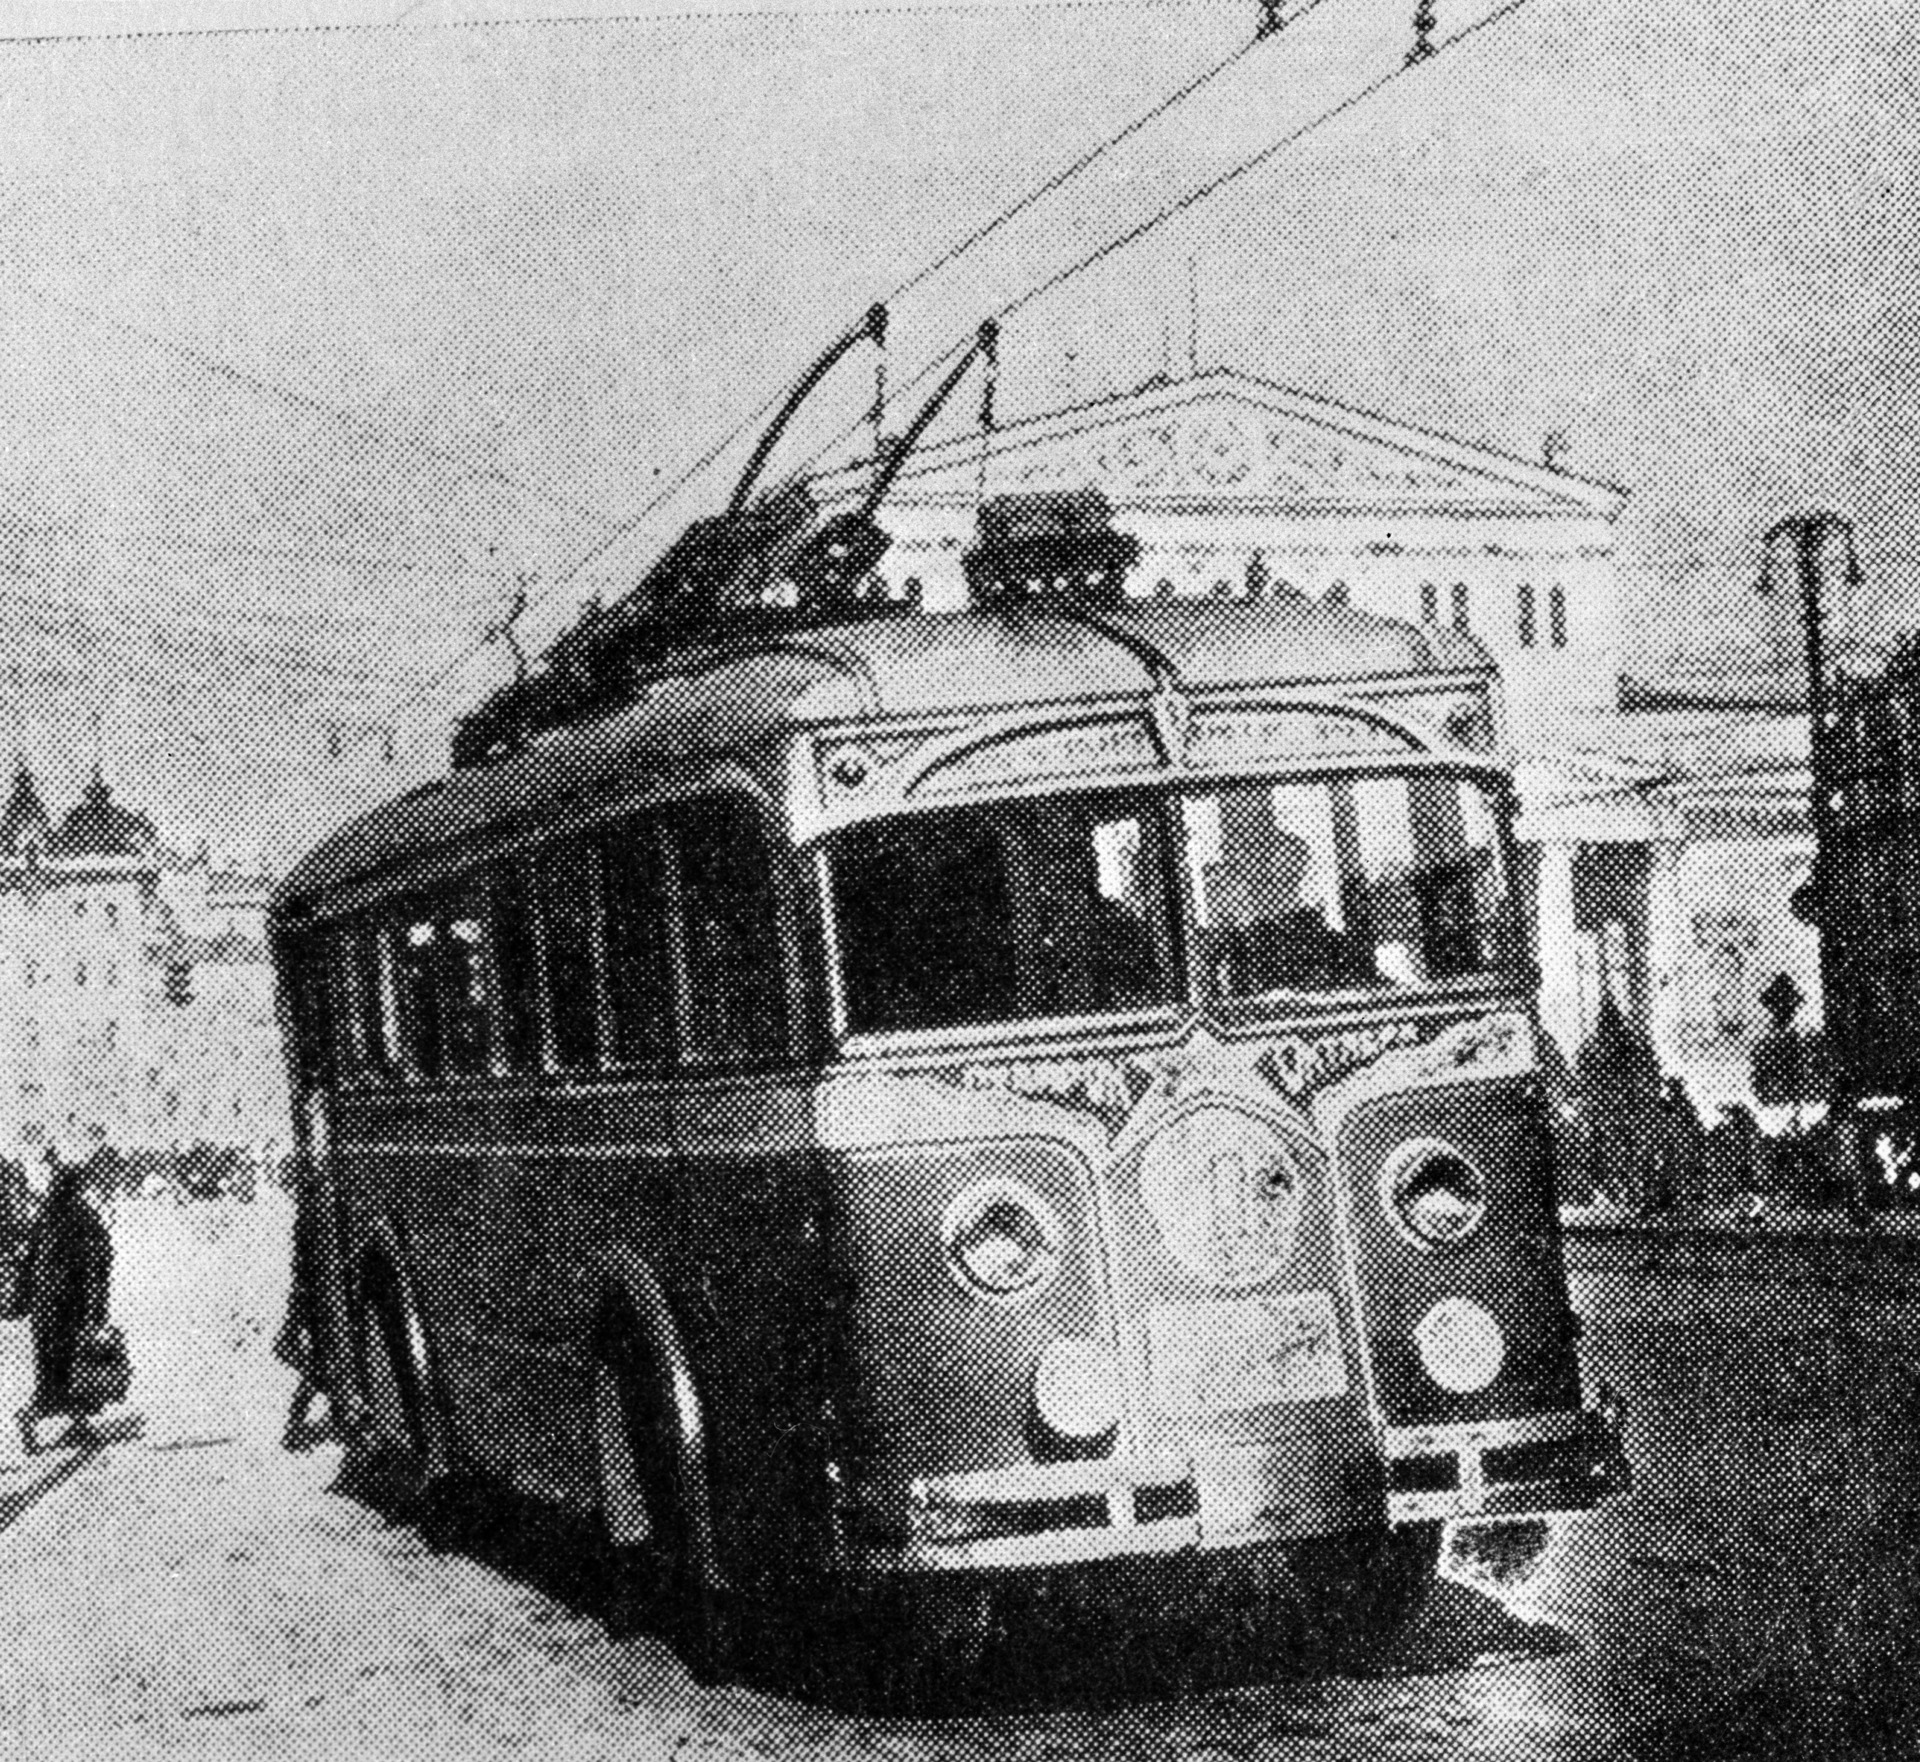 первый троллейбус фото